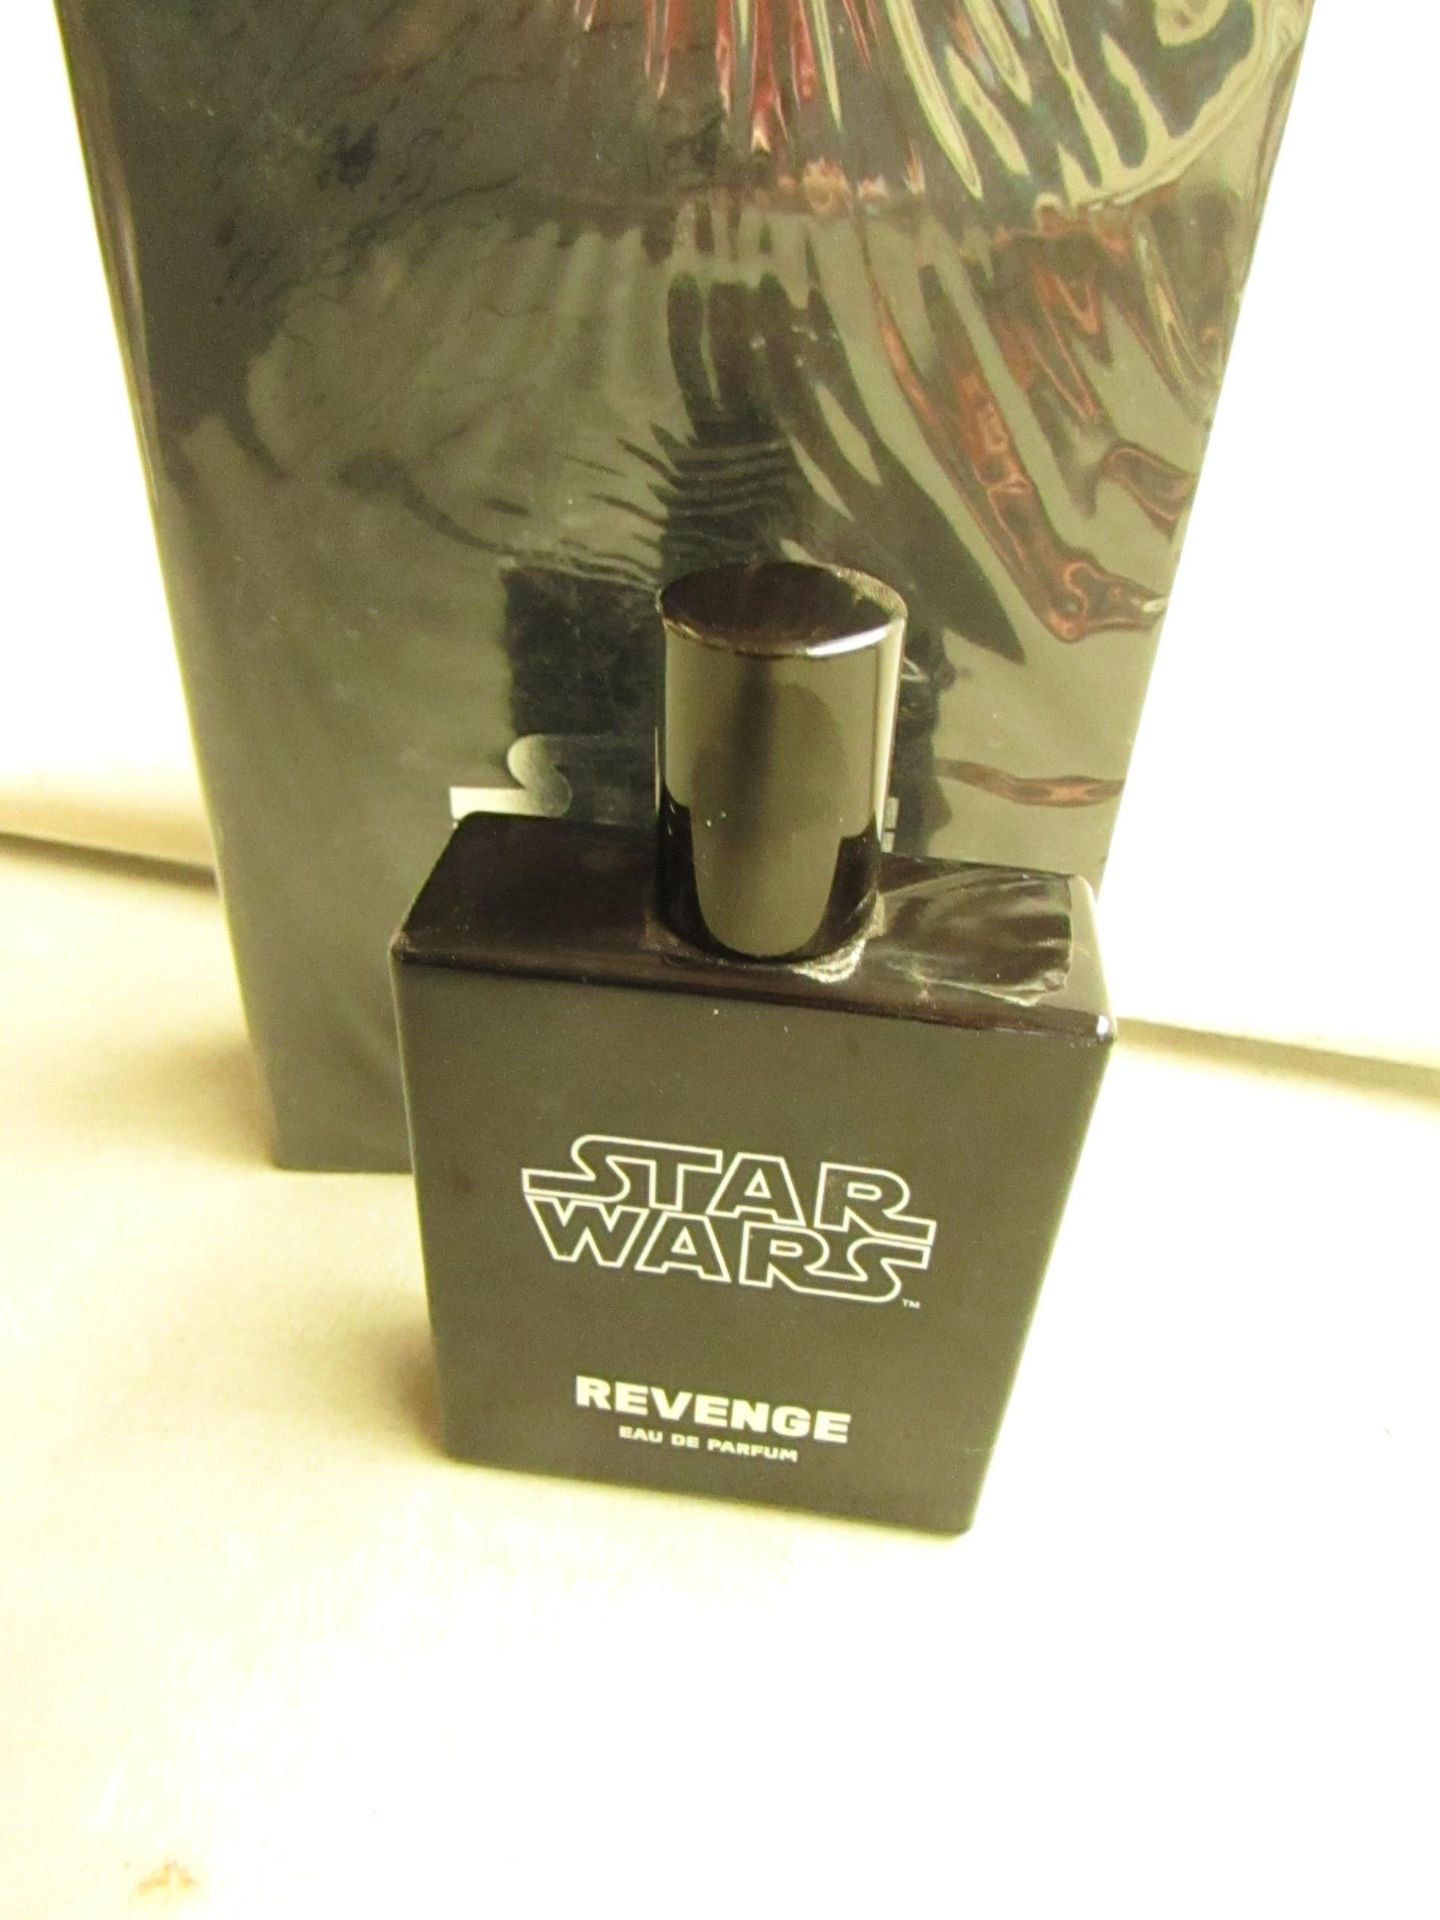 Star wars Revenge Eau De Parfum. 50ml. New